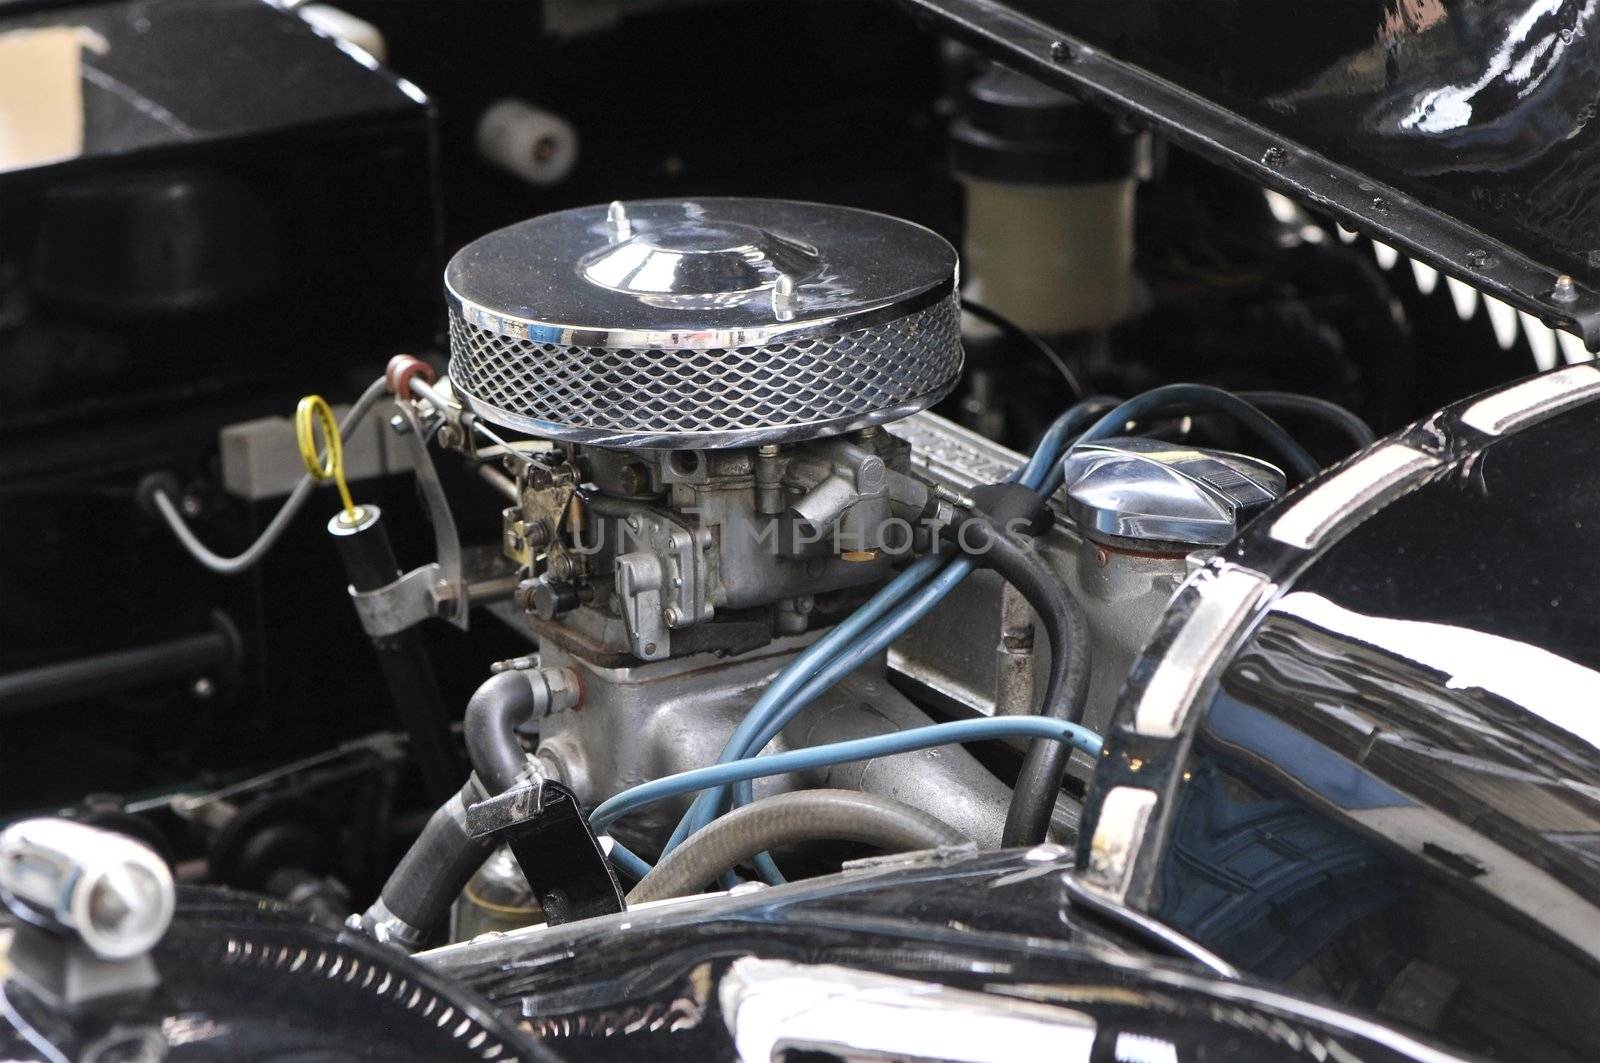 Chromed motor of an old Morgan car by shkyo30